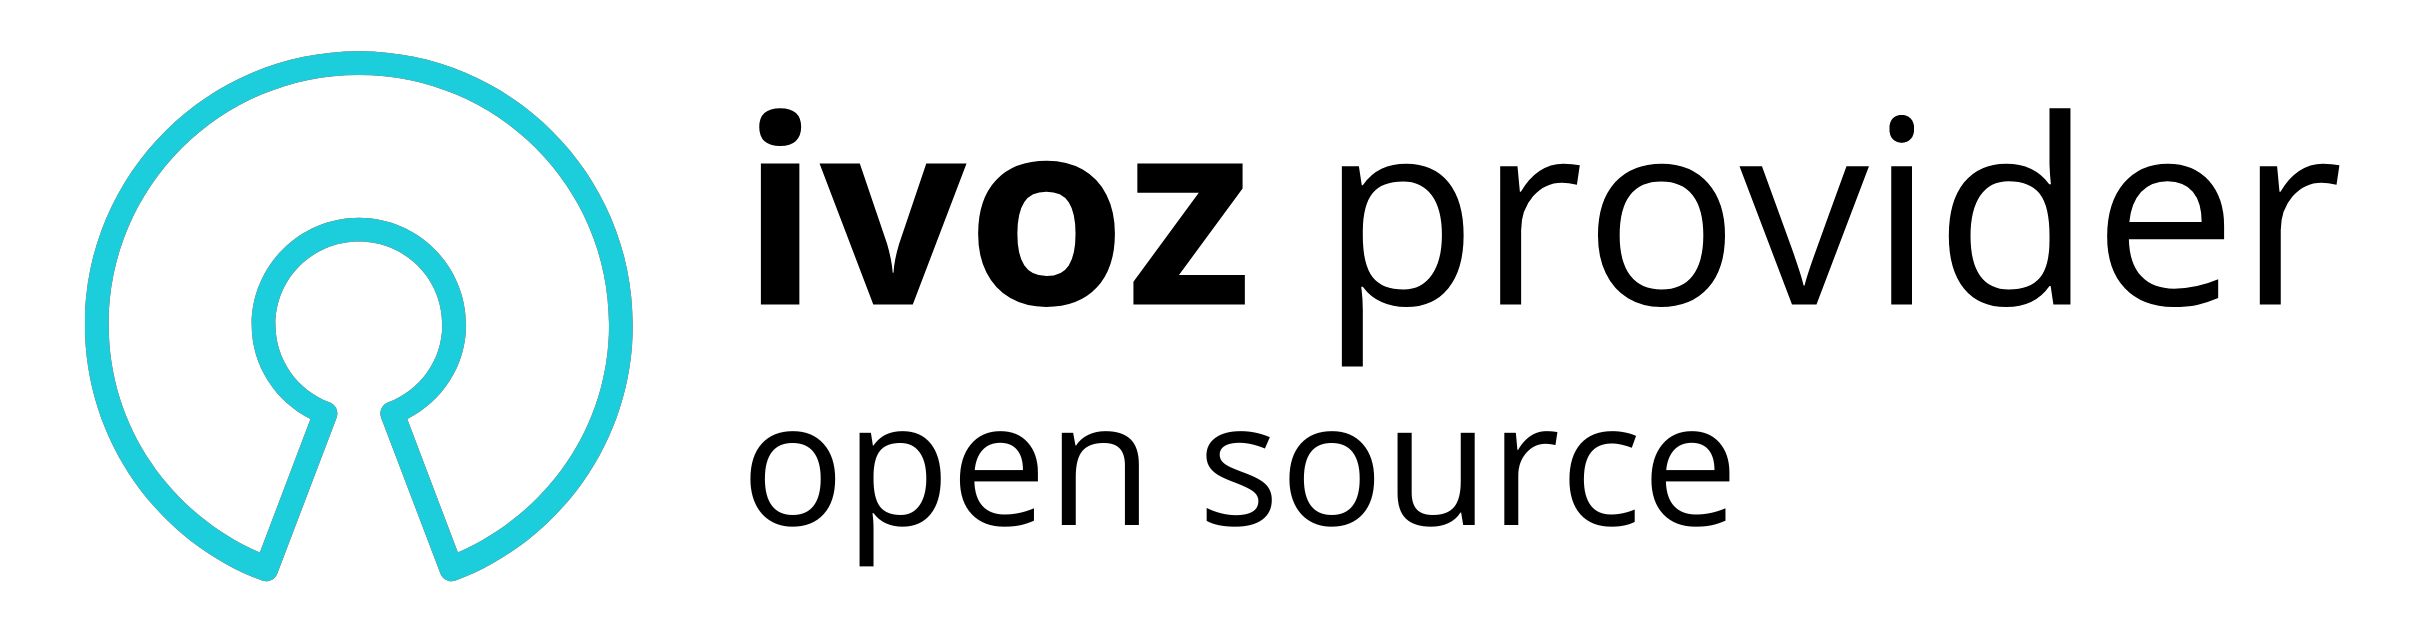 IvozProvider Logo